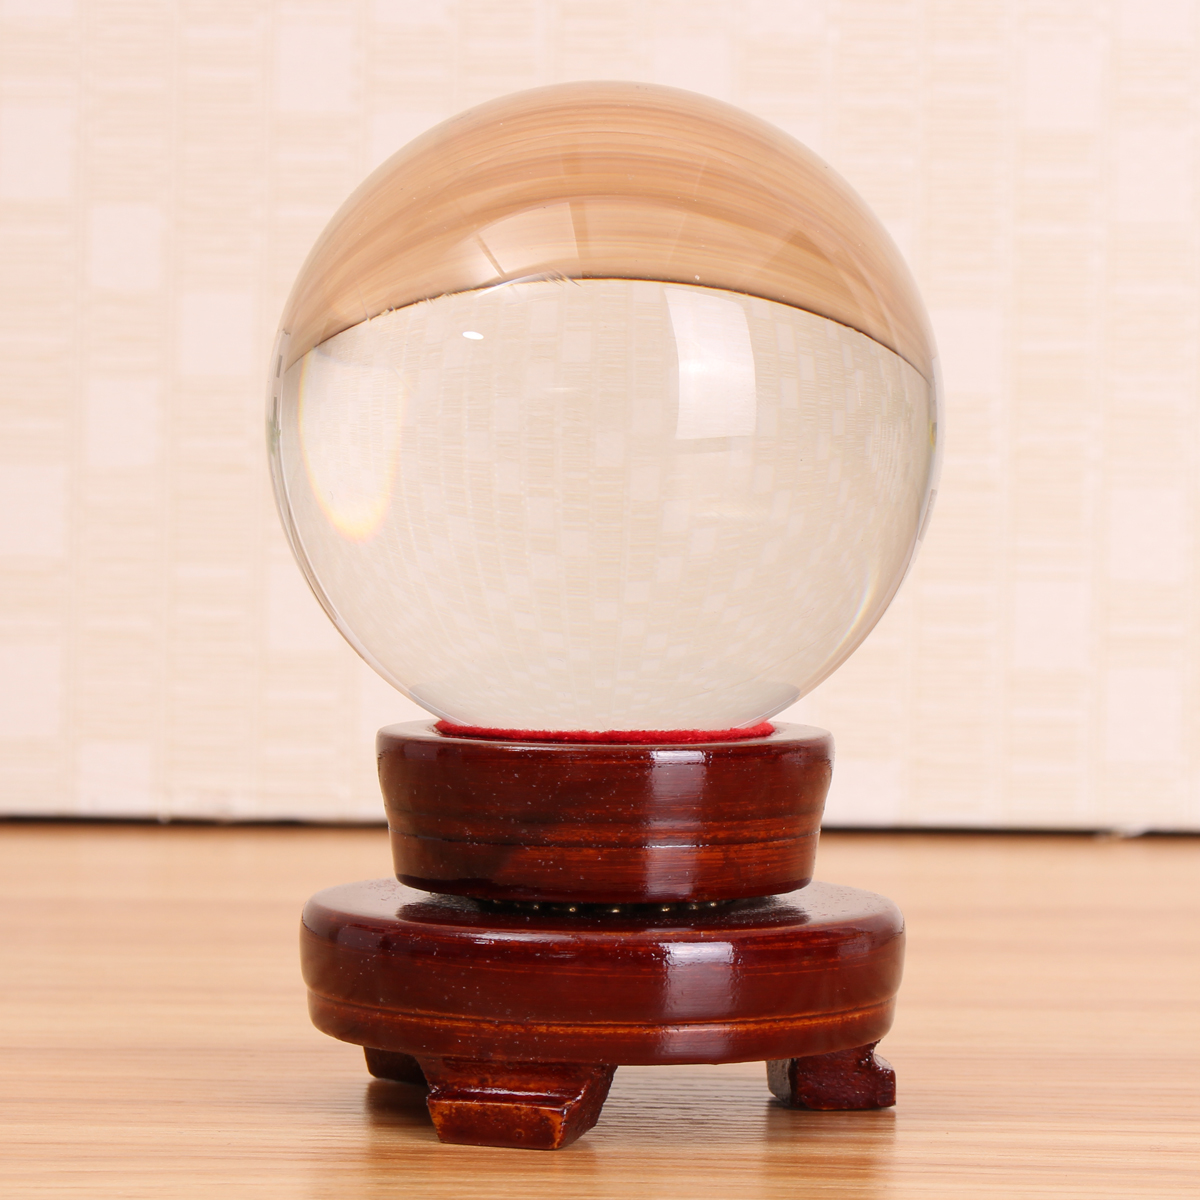 

Clear Quartz Glass Волшебный Crystal Healing Ball Sphere С подставкой Хобби Детские игрушки Домашние украшения